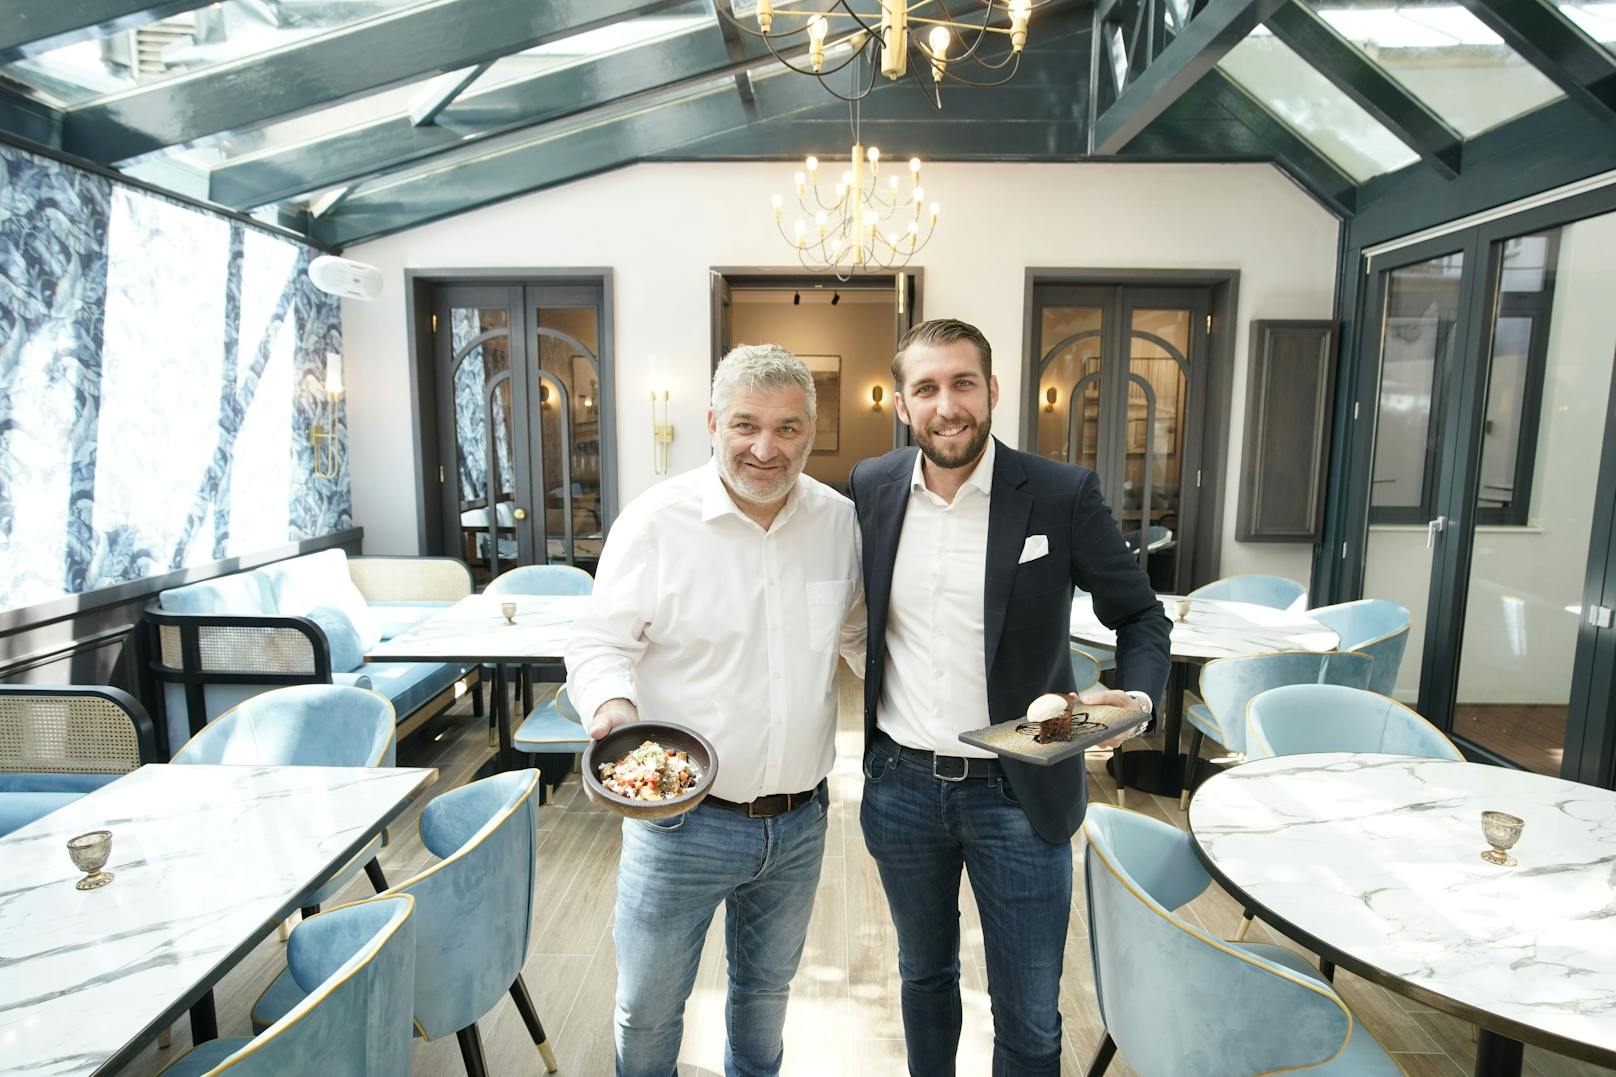 Die Grieche-Chefs Vasileios Salamanopoulos und Lukas Hammerl beleben die kulinarische Institution "Der Grieche" neu. Frühstück, Lunch und Dinner sind griechisch, modernen und authentisch.